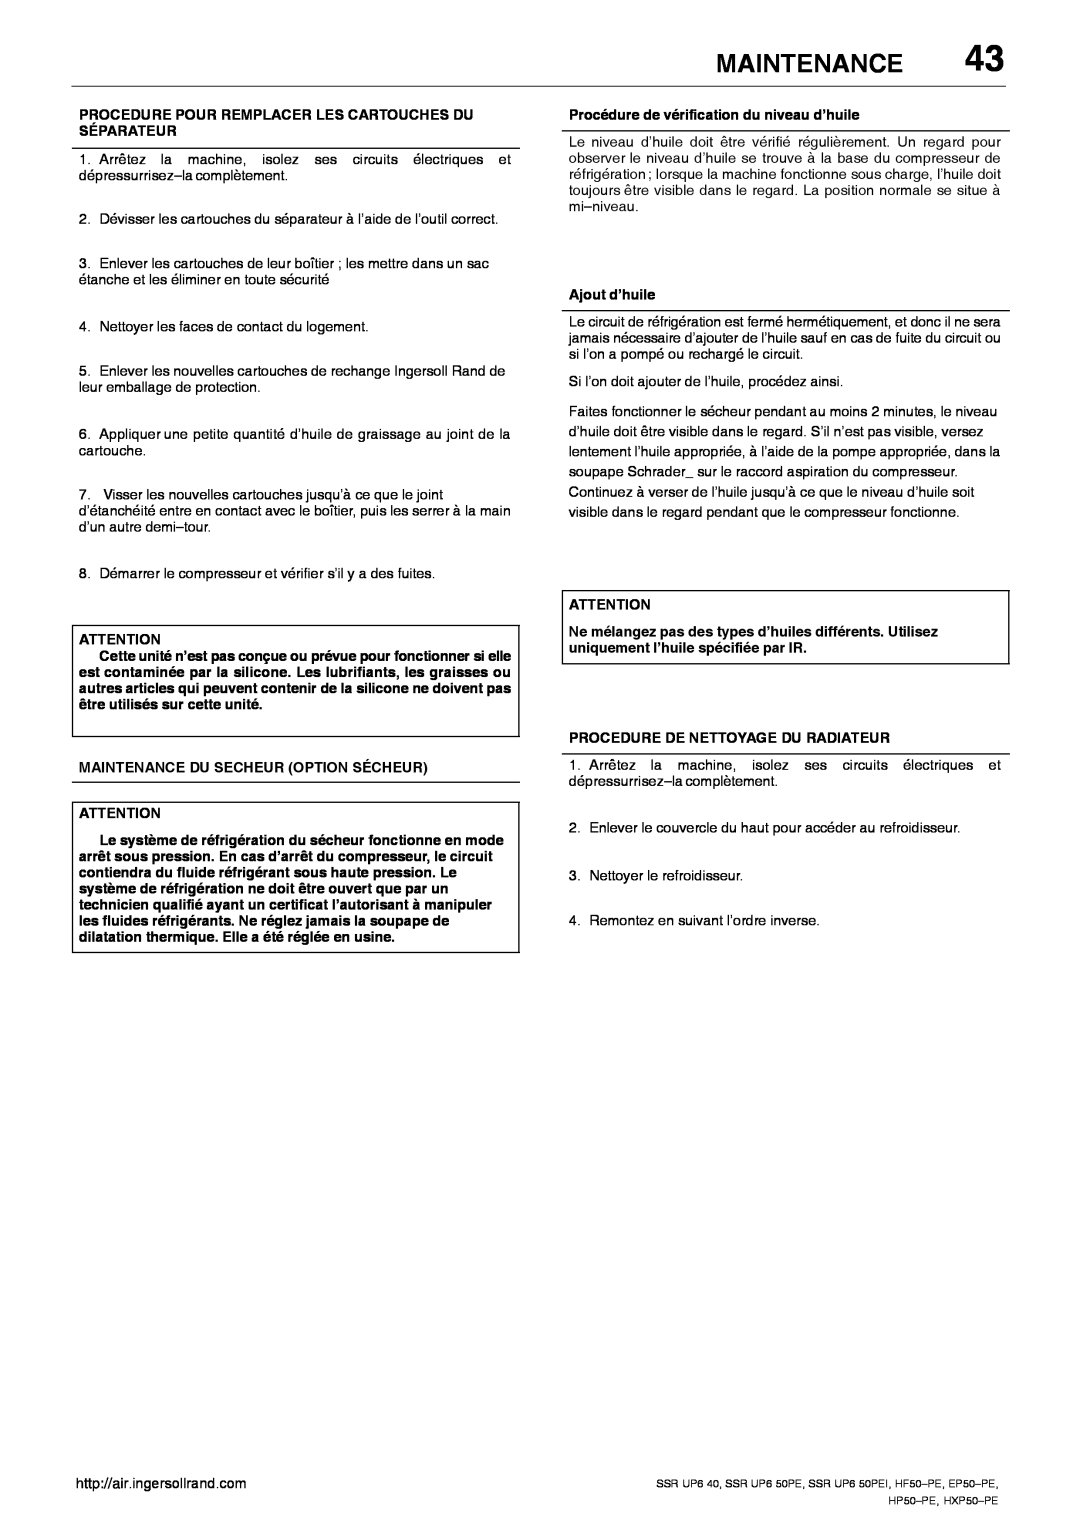 Ingersoll-Rand EP50-PE, SSR UP6 40 manual Maintenance, Procedure Pour Remplacer Les Cartouches Du Séparateur, Ajout d’huile 